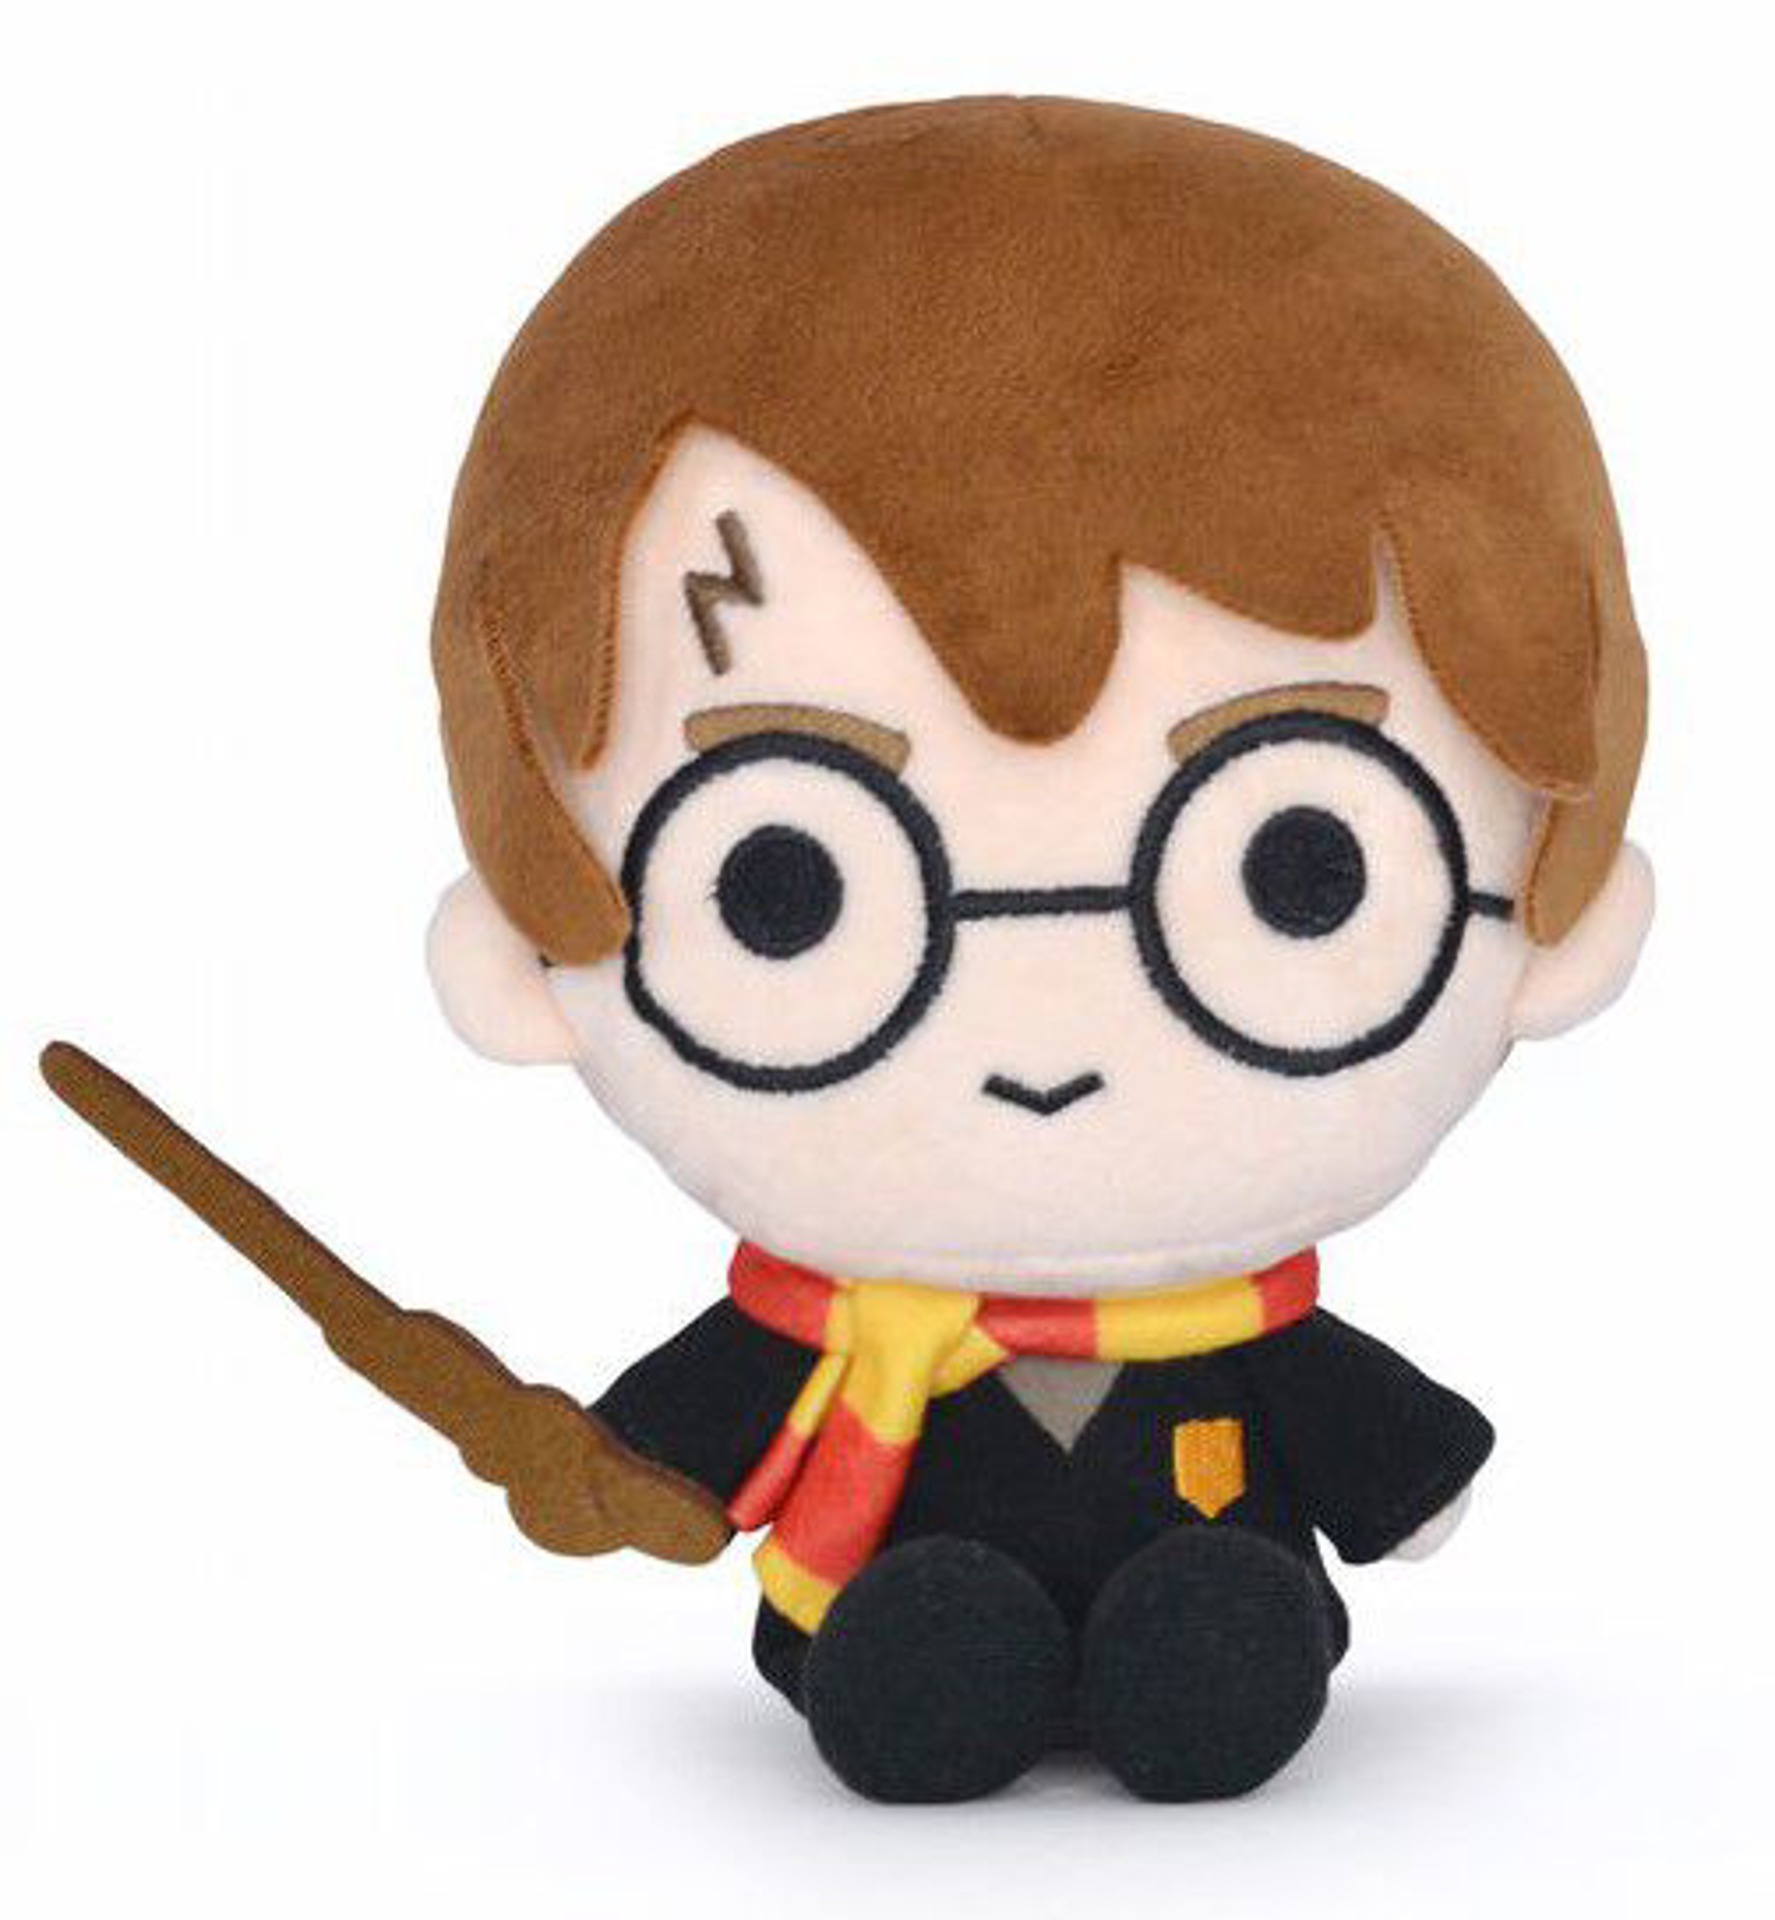 Acheter Harry Potter - Peluche Harry Chibi 20 cm (Harry Potter, Ron Wea -  Peluches prix promo neuf et occasion pas cher